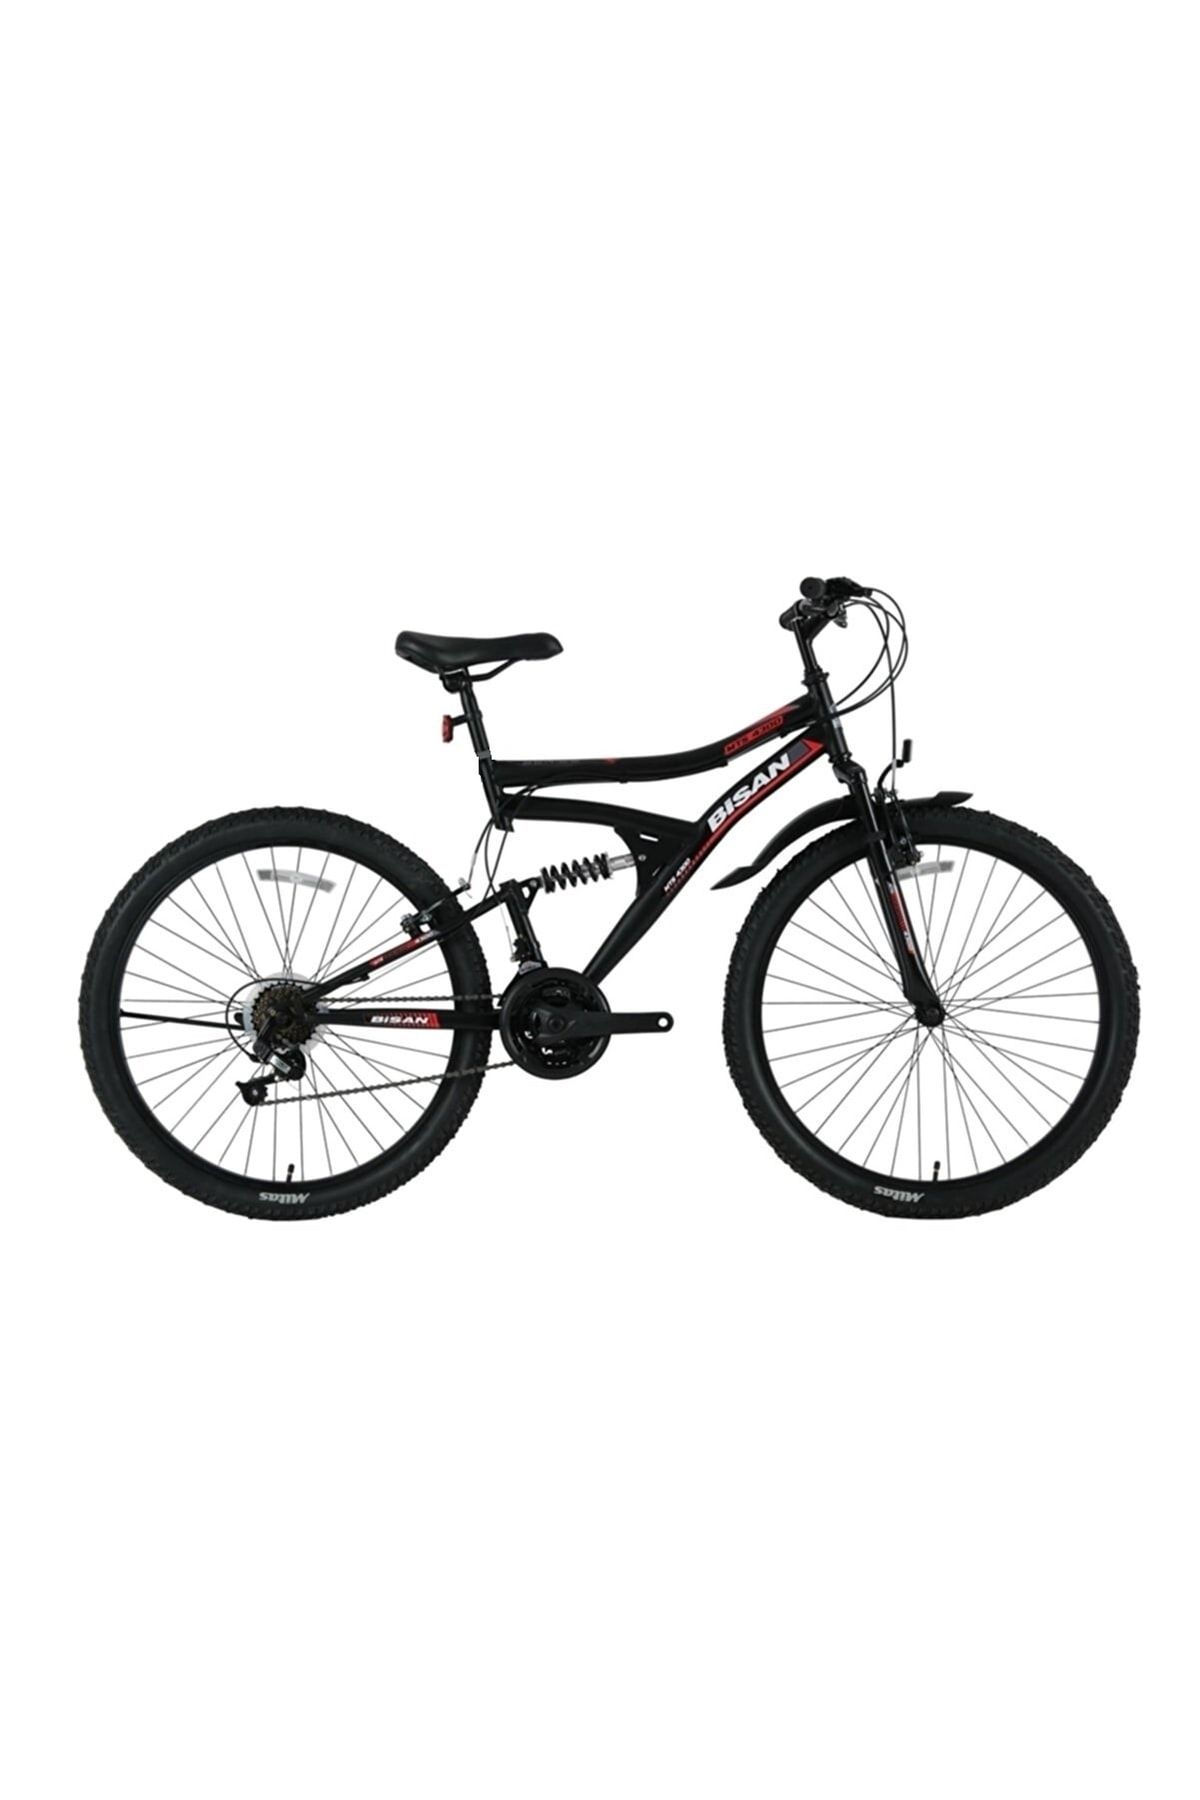 Bisan Mts 4300 26 Jant 40 Cm ( 16 - 17 Kadro ) Bisiklet (mat Siyah - Kırmızı )